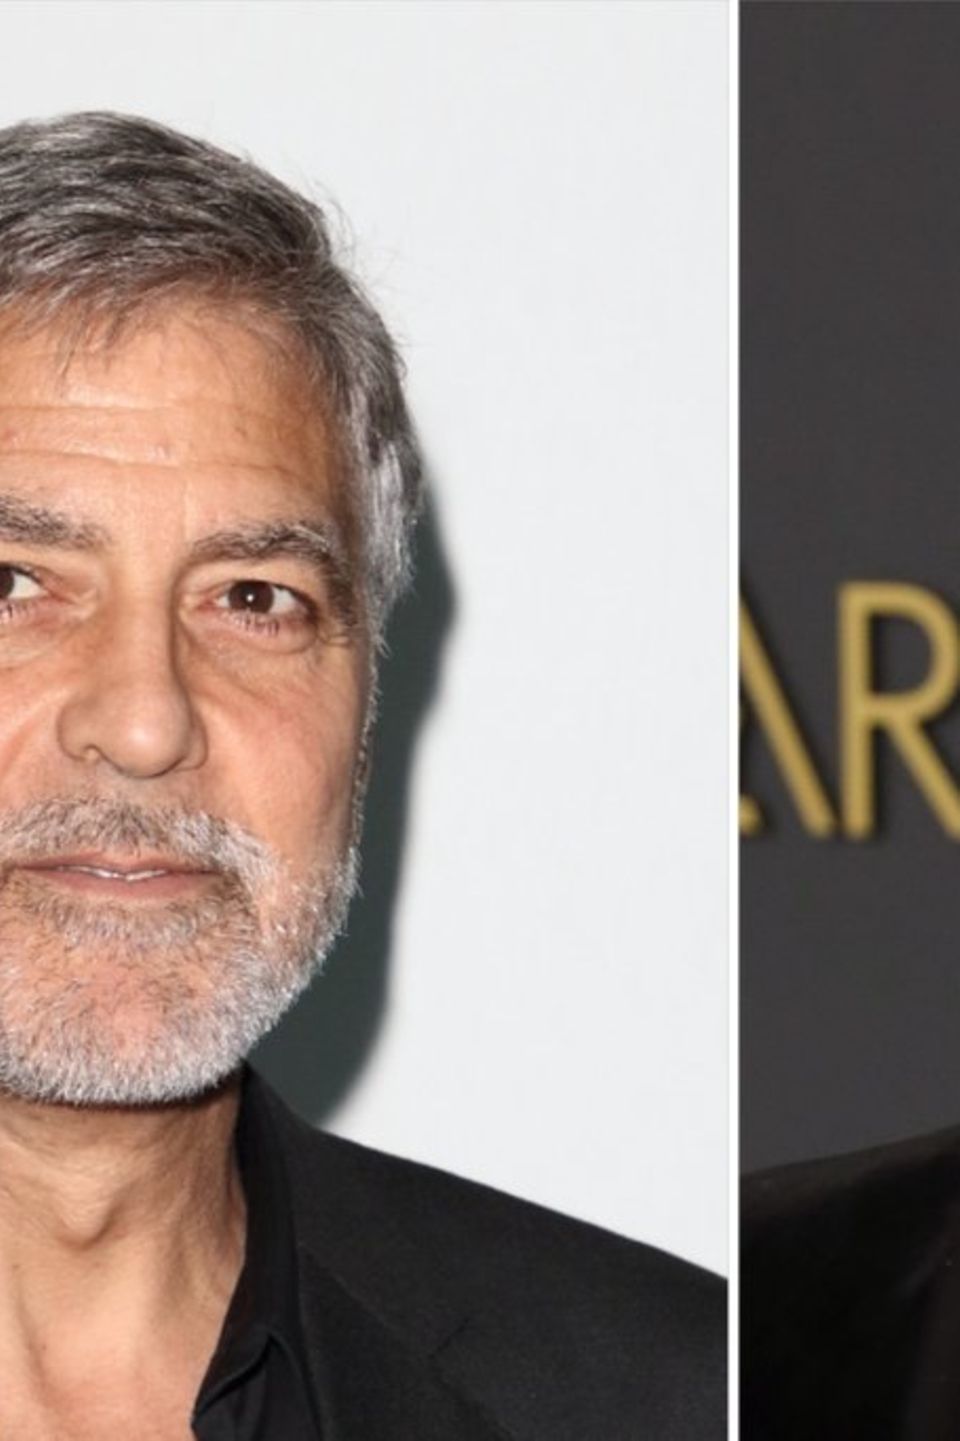 George Clooney (l.) und Brad Pitt stehen für den neuen Actionthriller "Wolfs" wieder gemeinsam vor der Kamera.